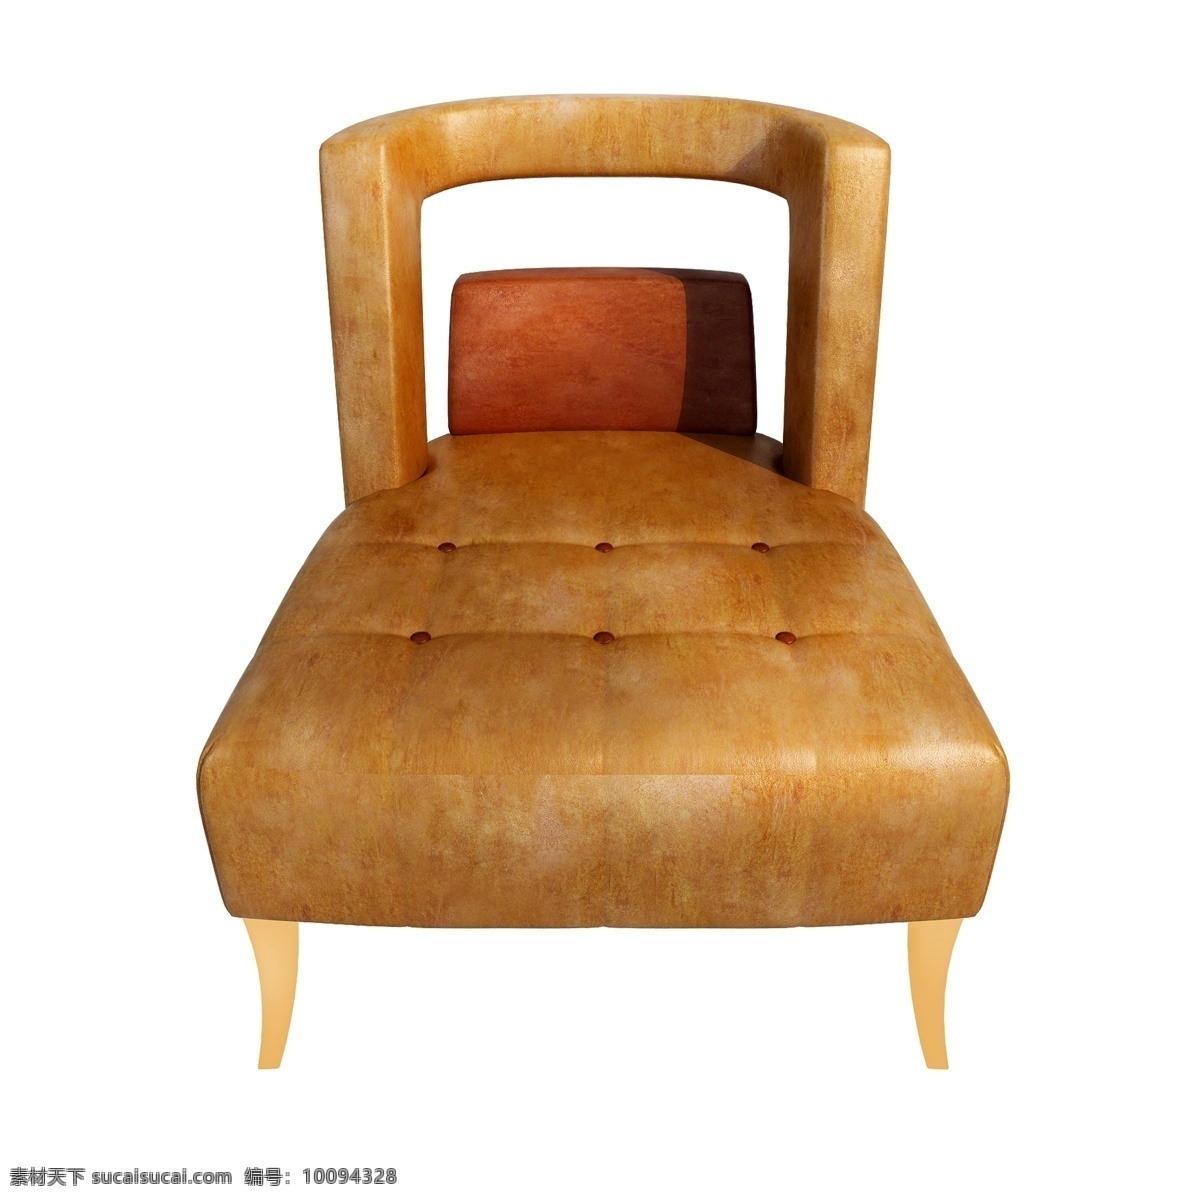 立体 皮质 椅子 图 皮纹 单人椅 沙发 舒适 狂野 金属 质感 3d 创意 套图 png图